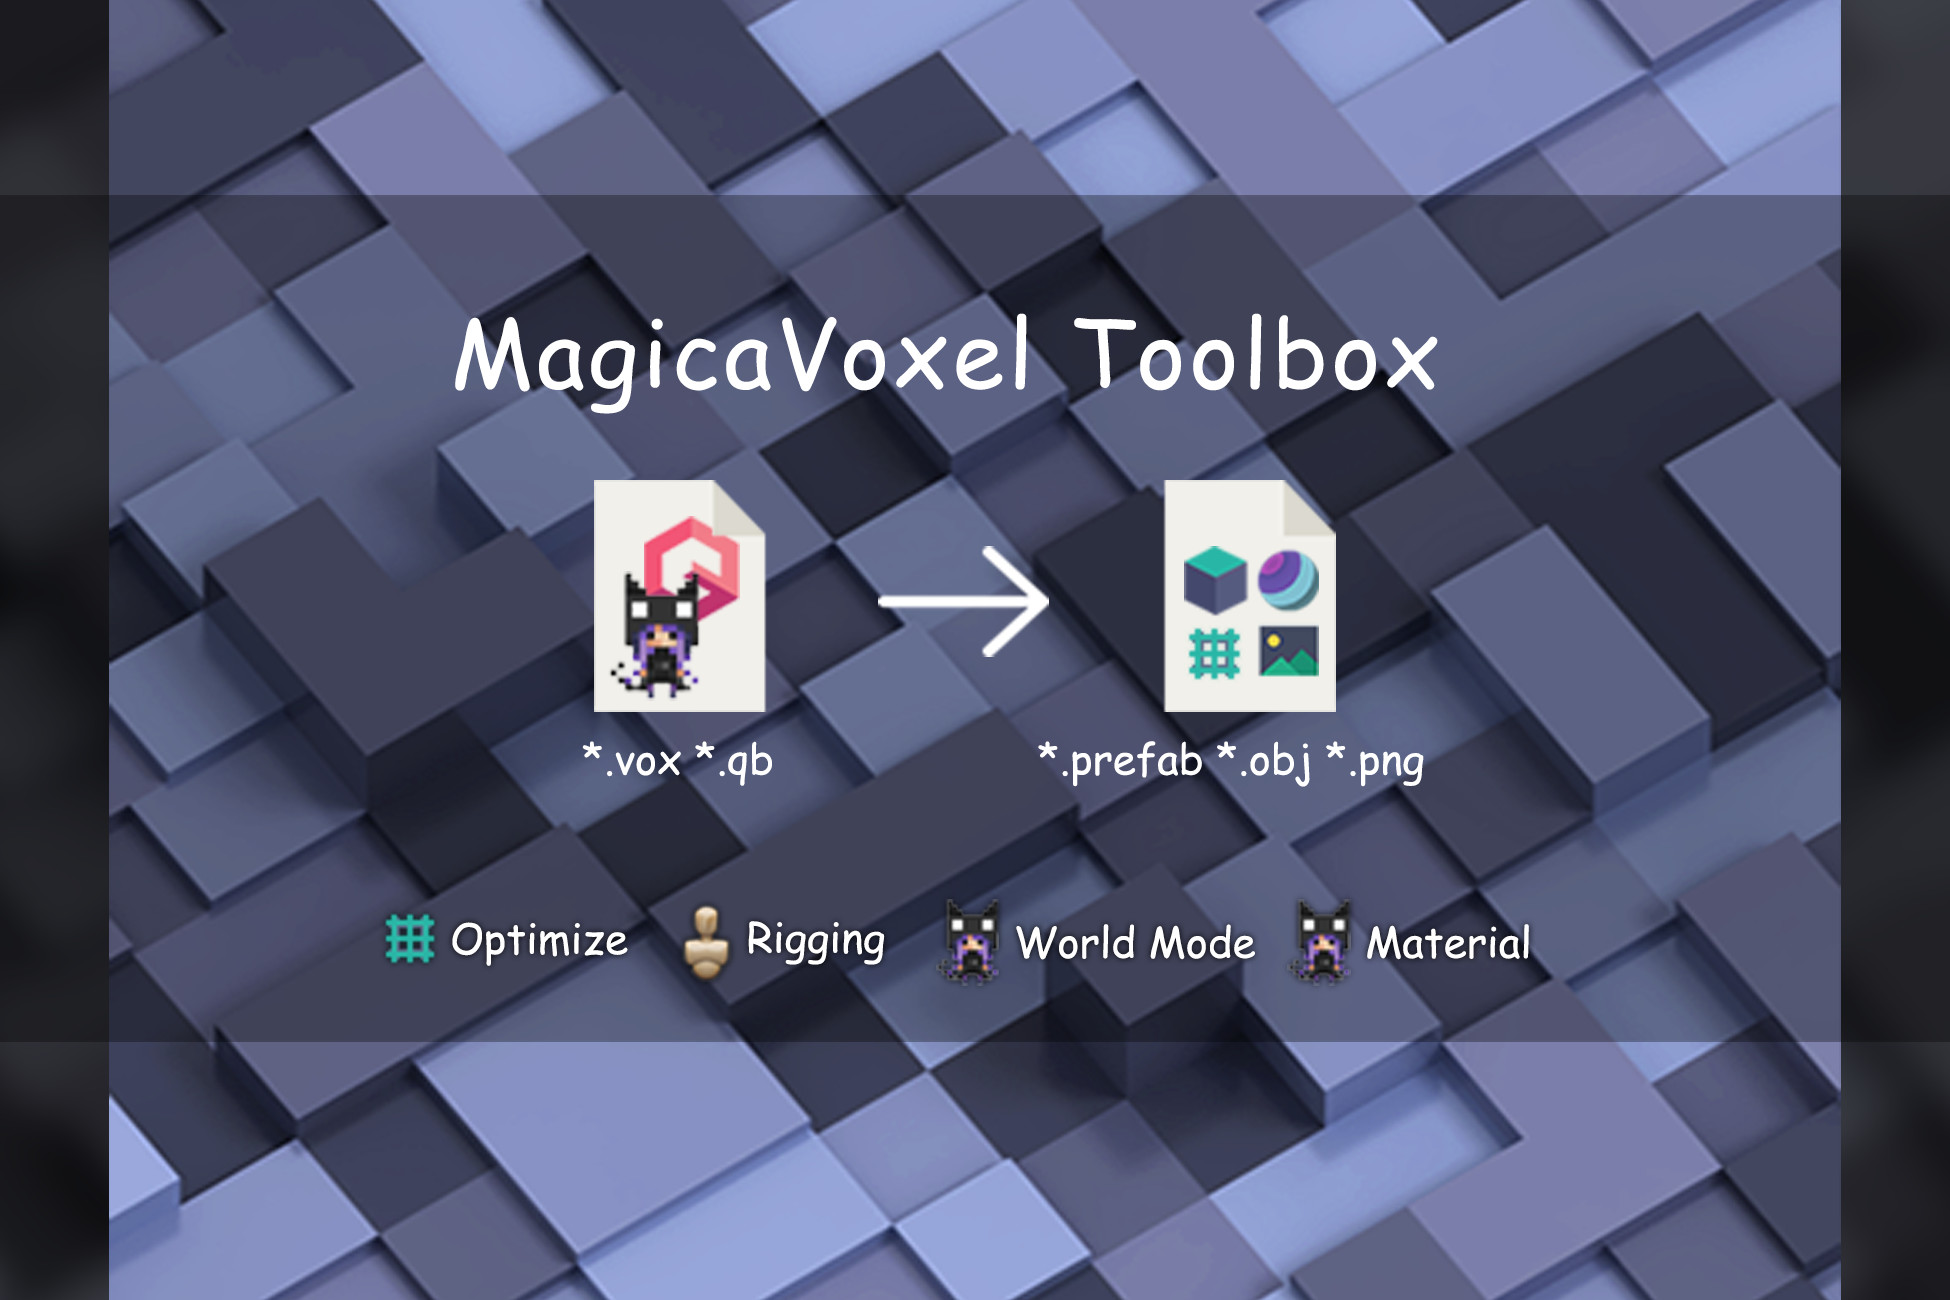 magicavoxel controls